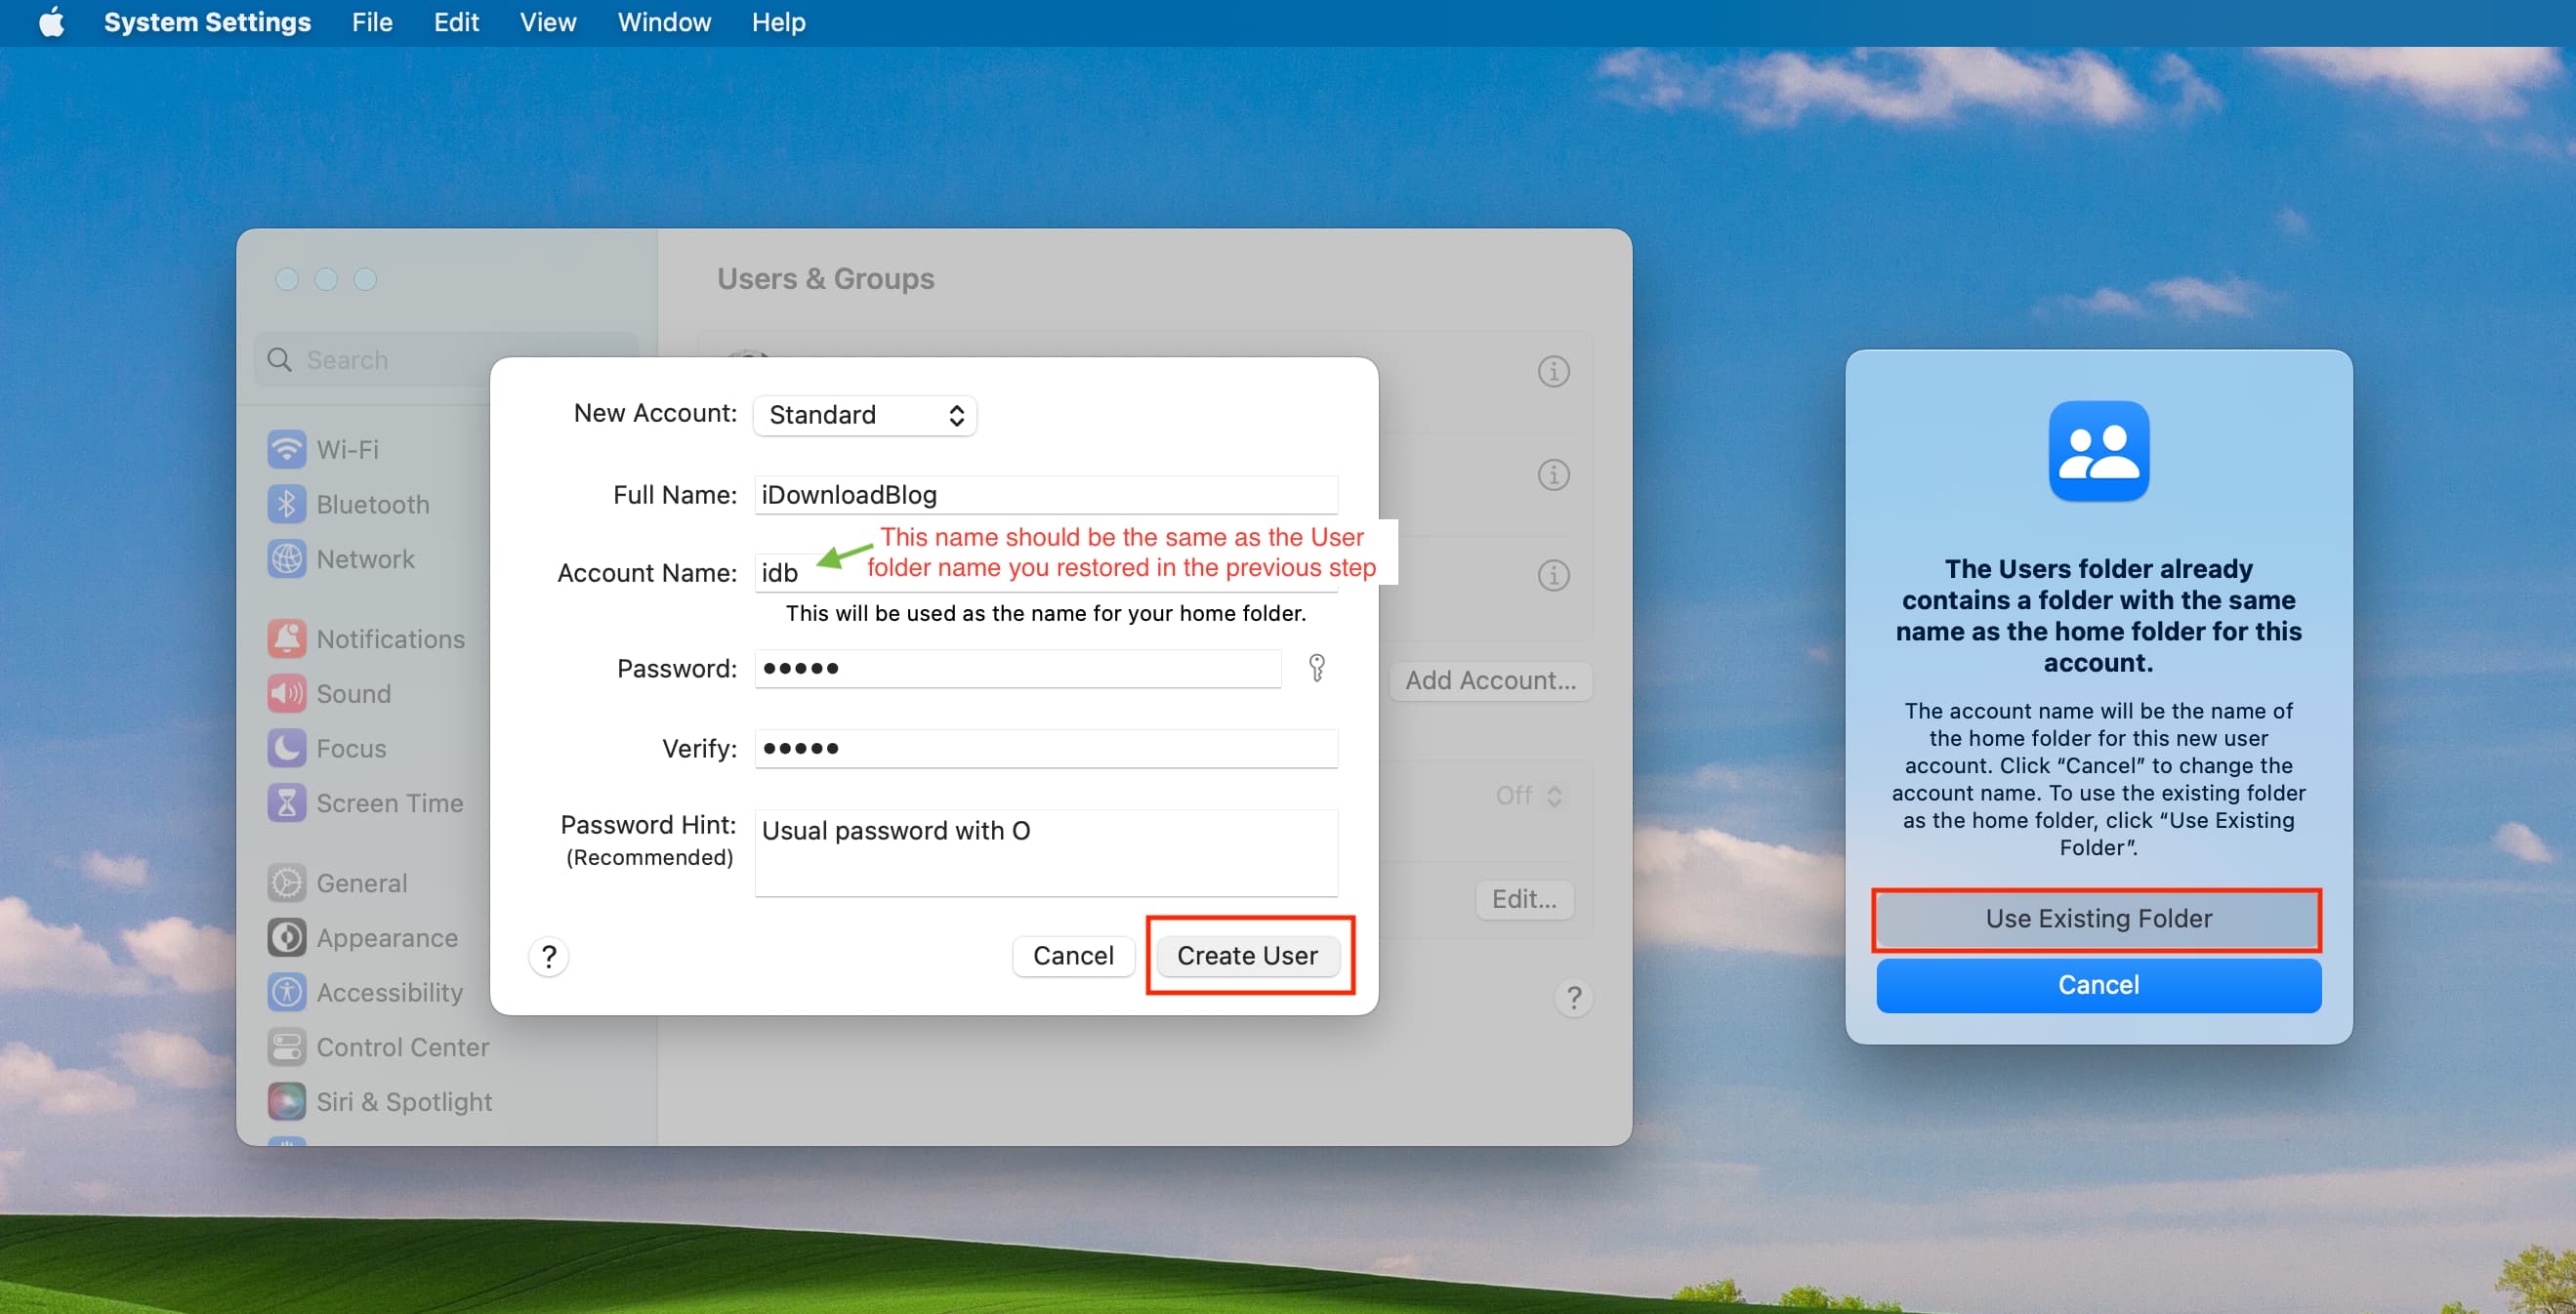 Créez un nouveau compte d'utilisateur sur Mac avec exactement le même nom de compte que le dossier de départ restauré